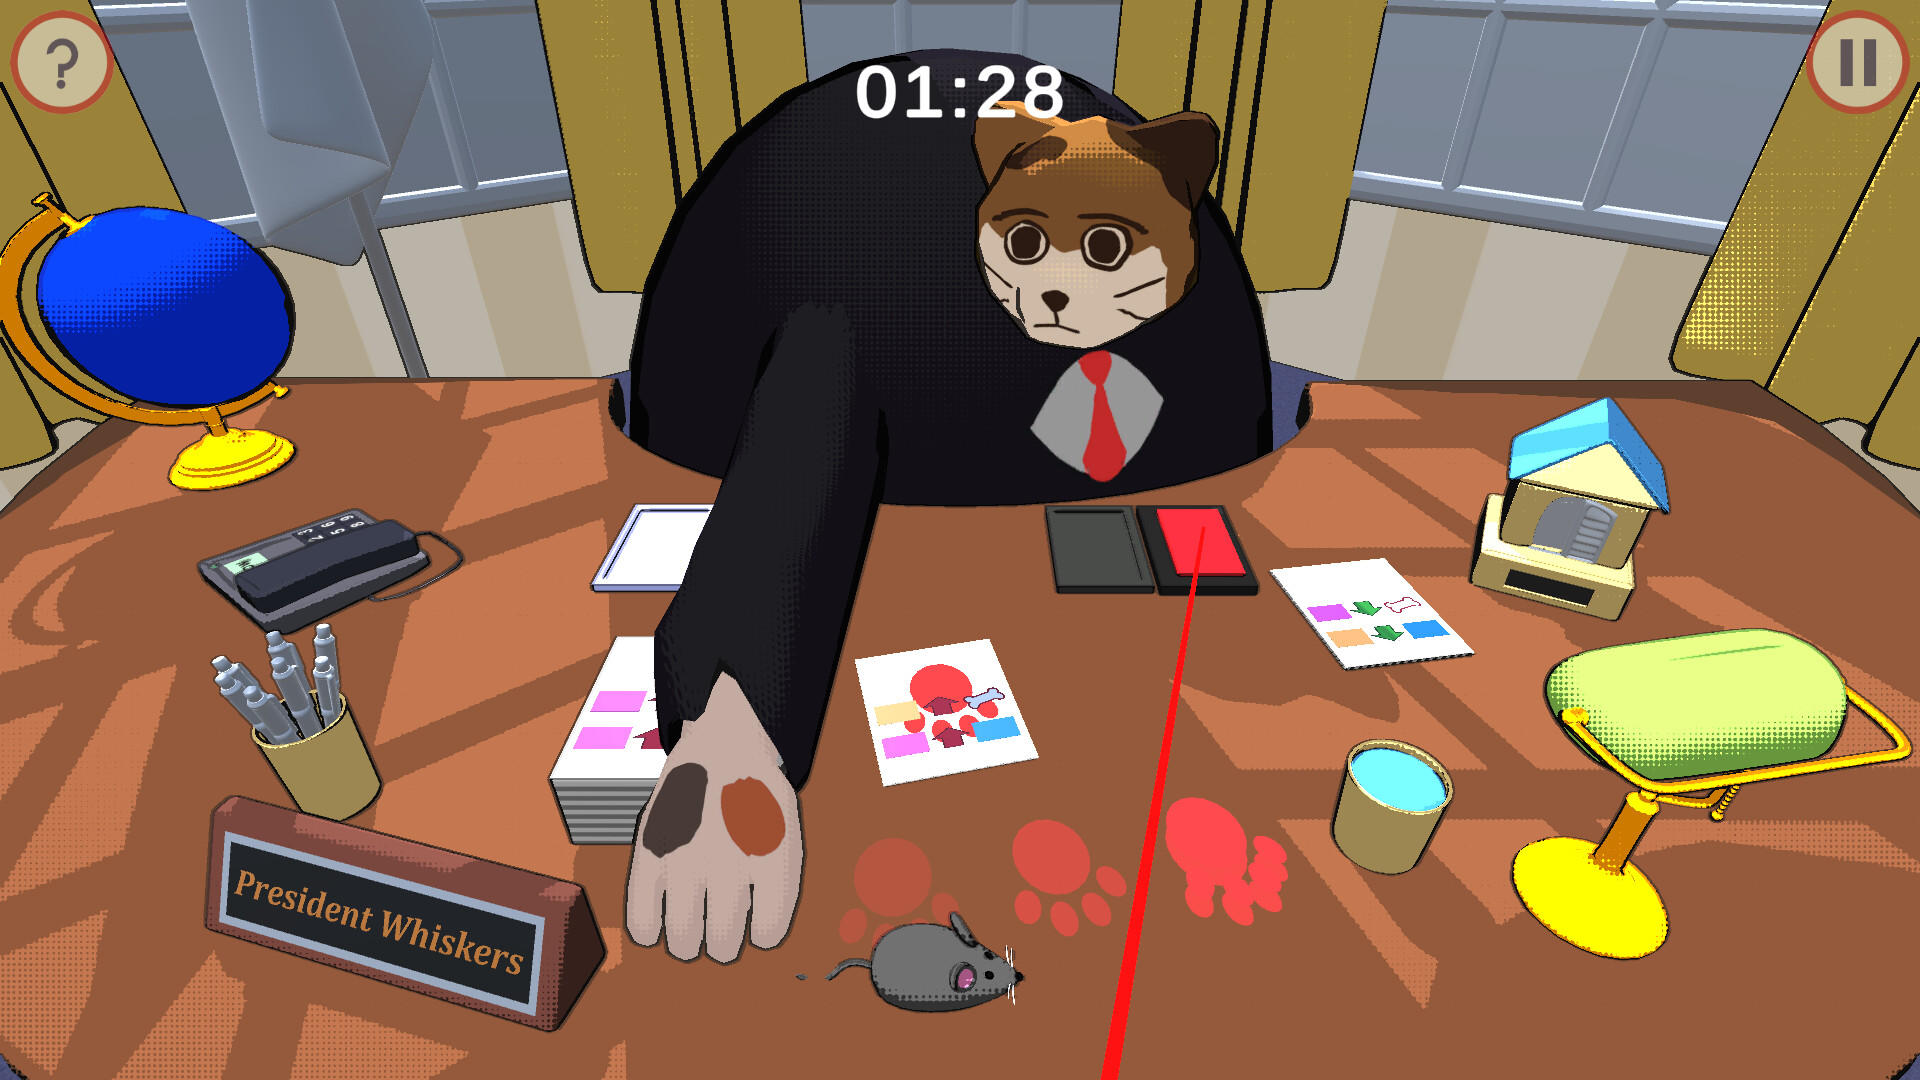 Whisker President screenshot game